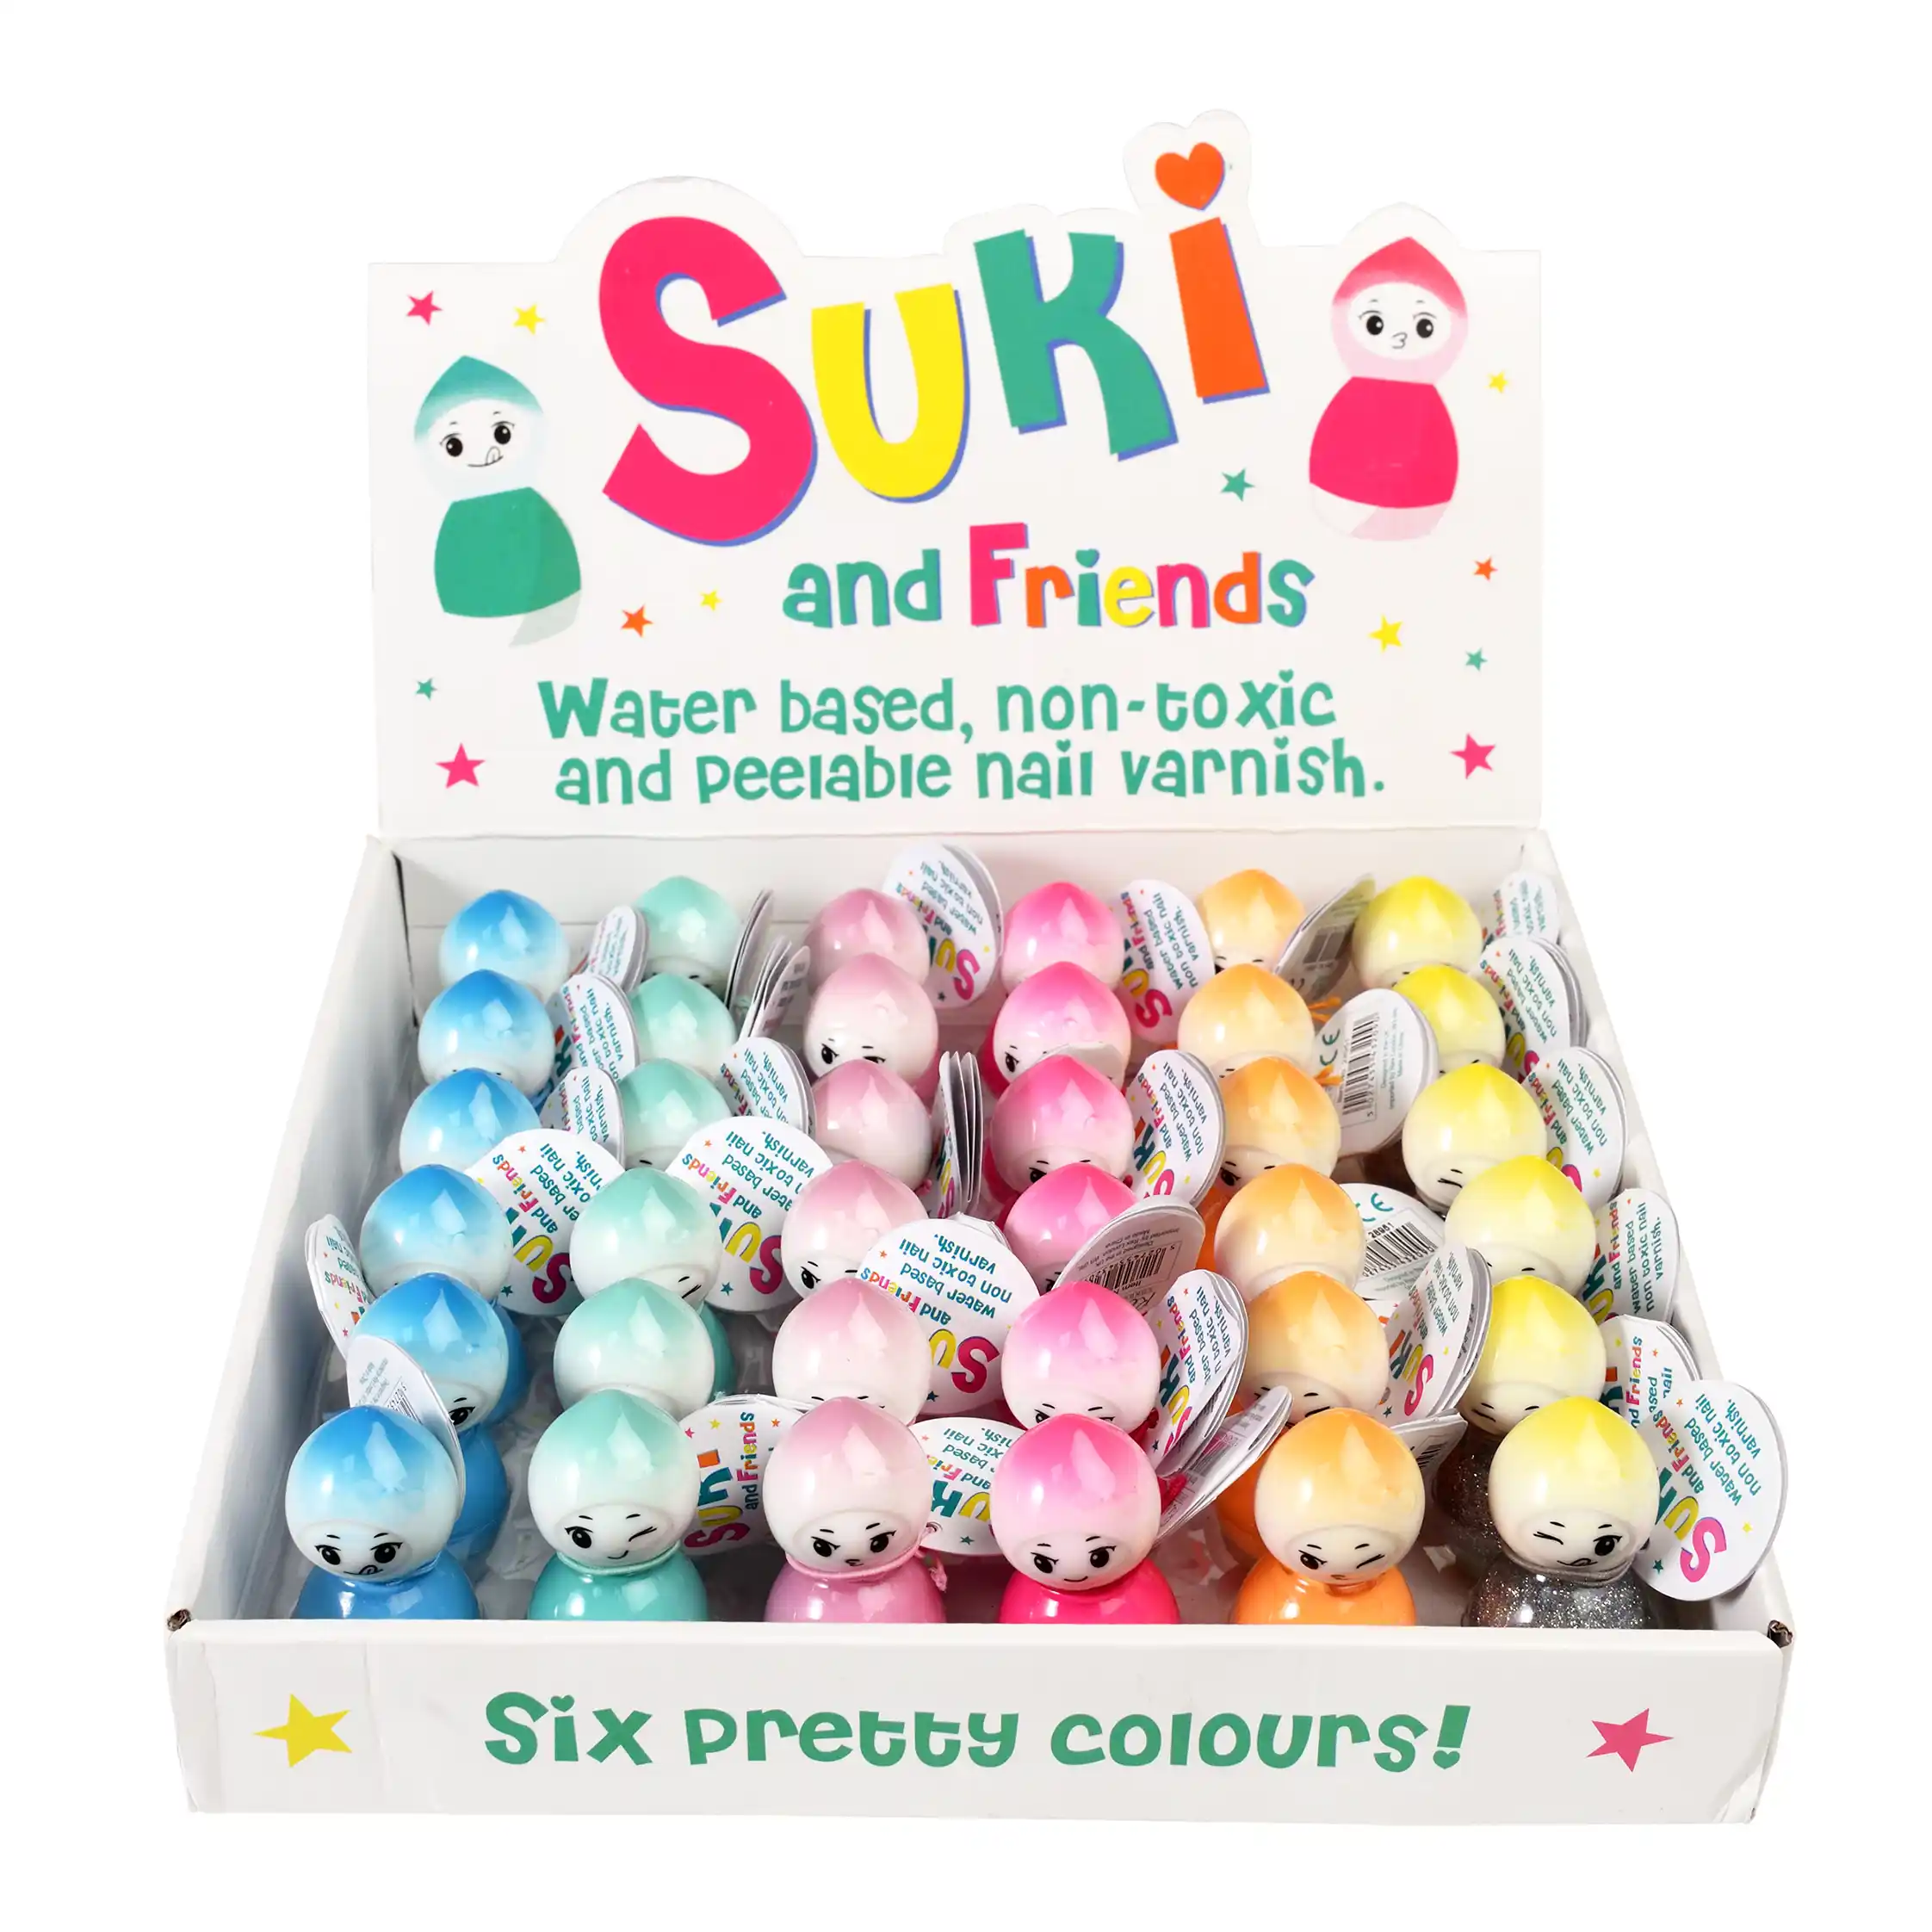 esmalte de uñas suki and friends